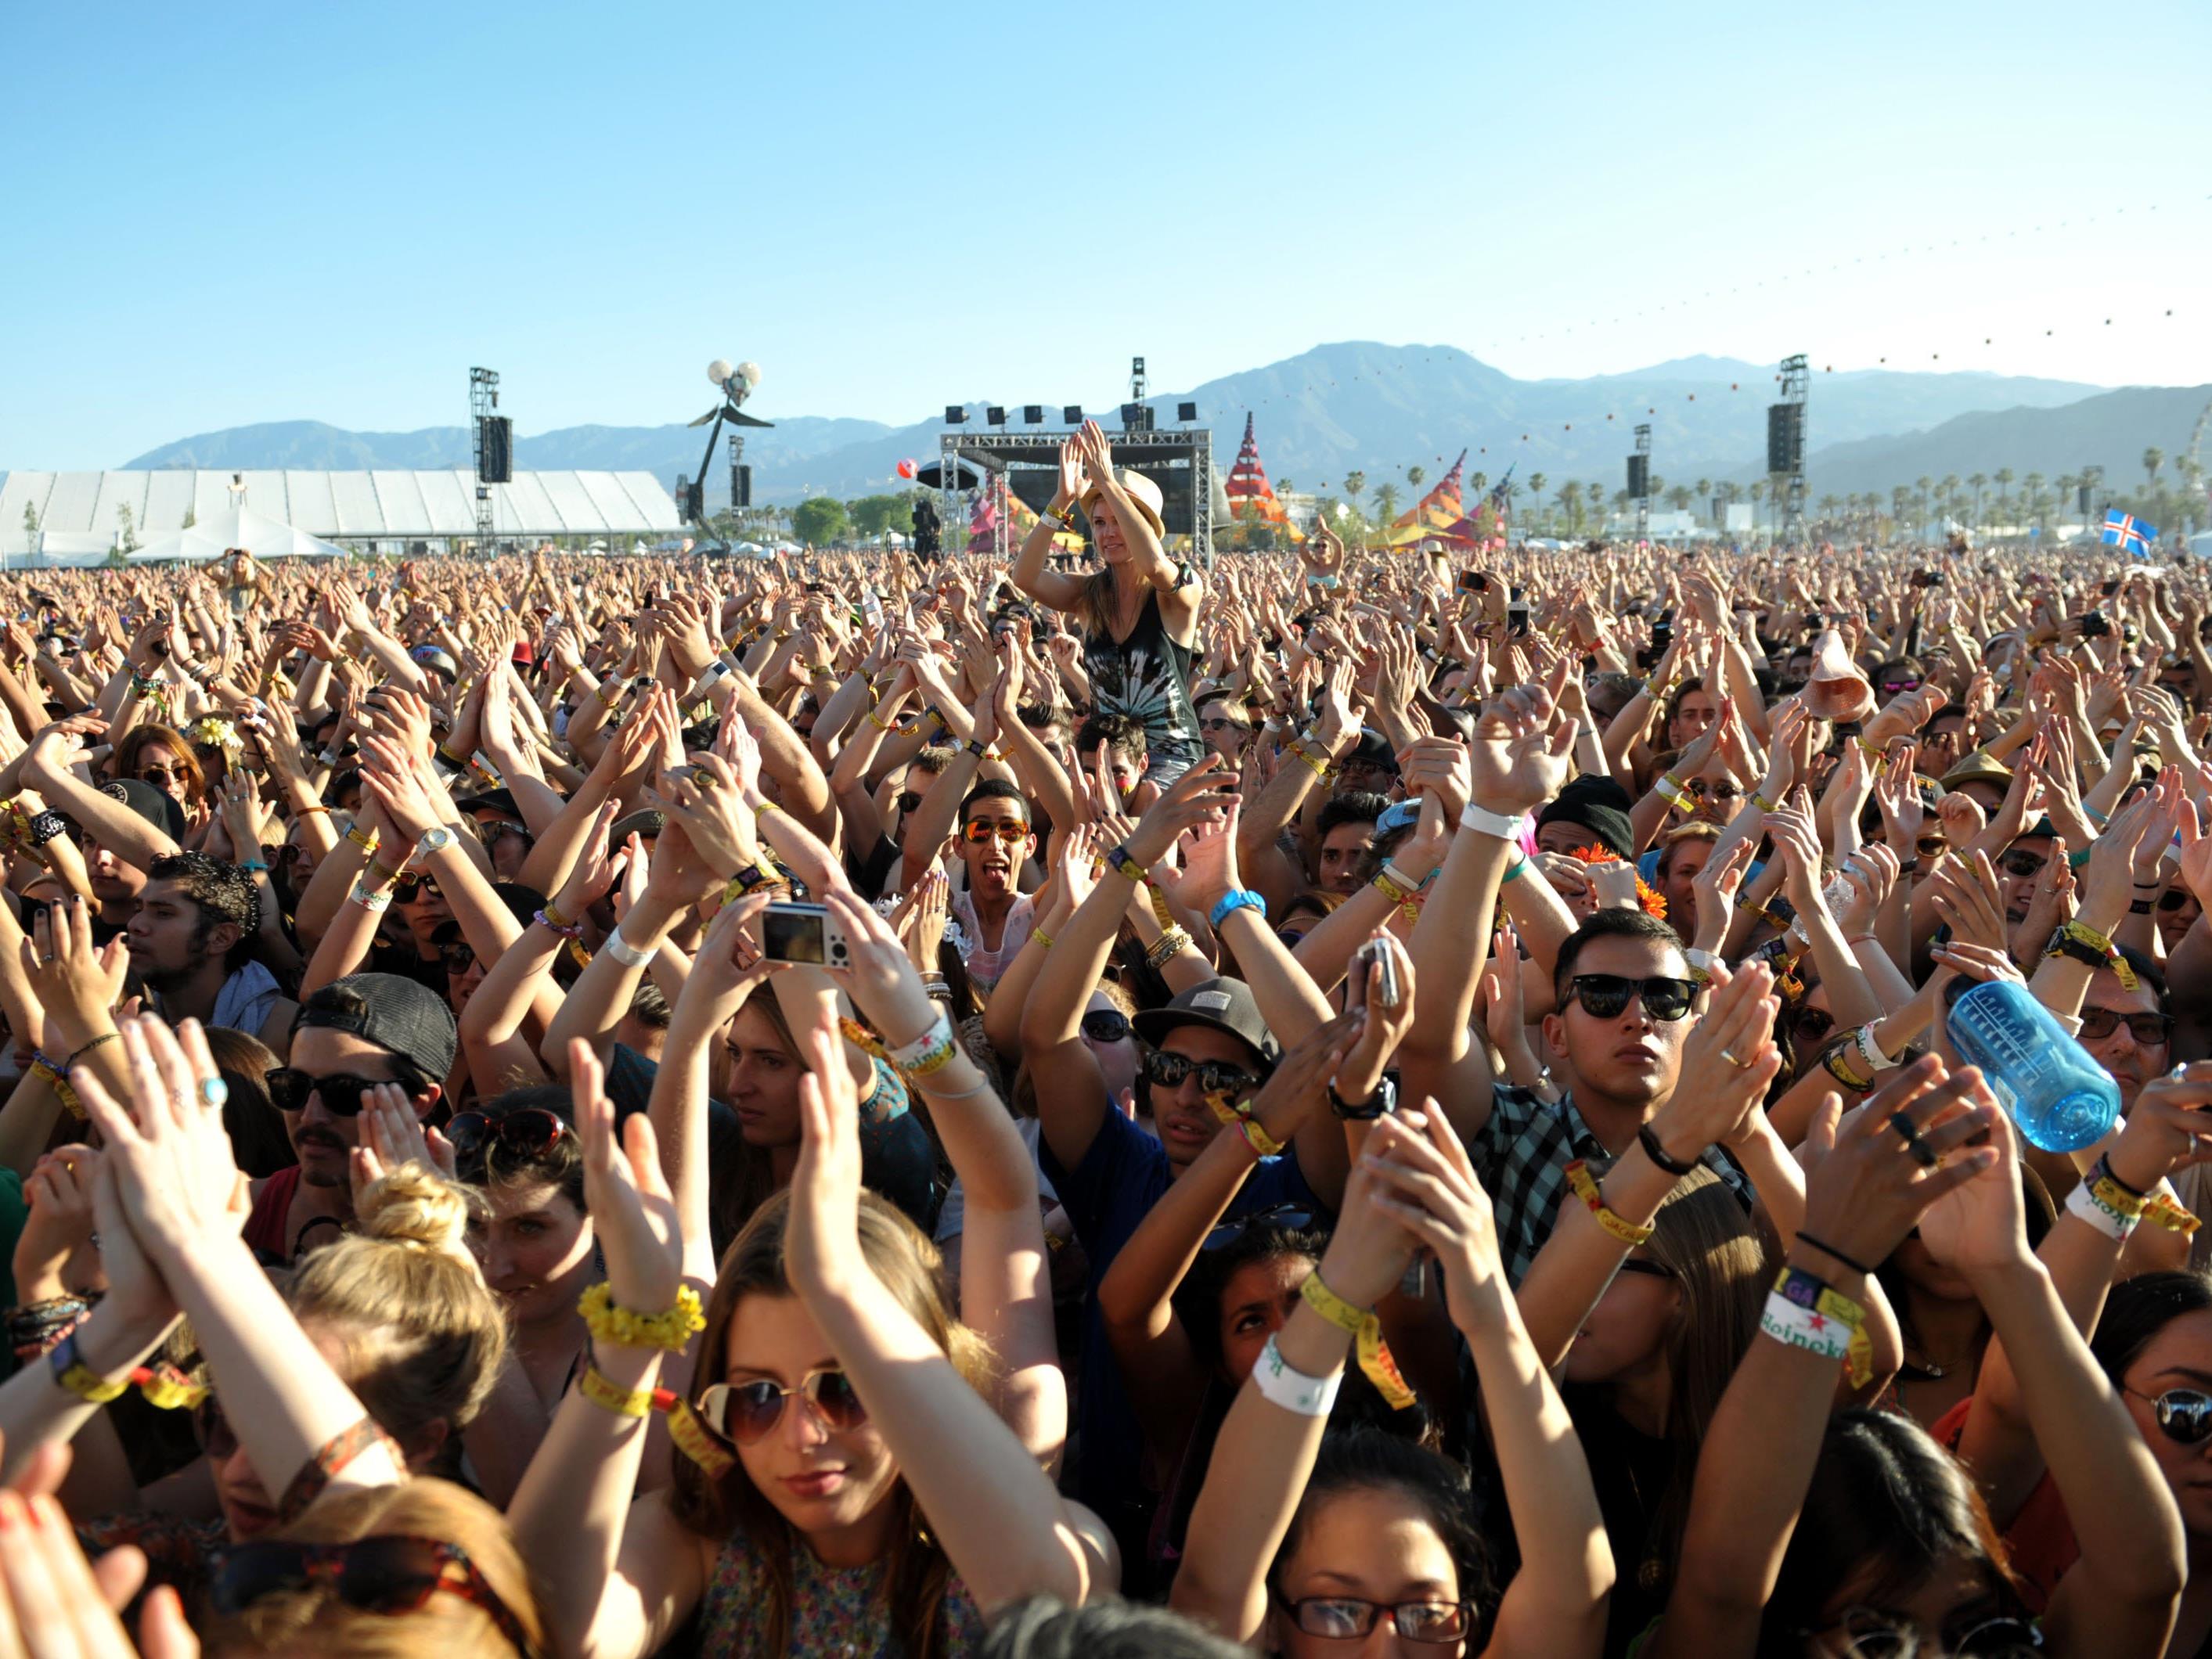 Von 15. bis 24. April findet im kalifornischen Indio wieder das “Coachella Valley Music and Arts Festival” statt.